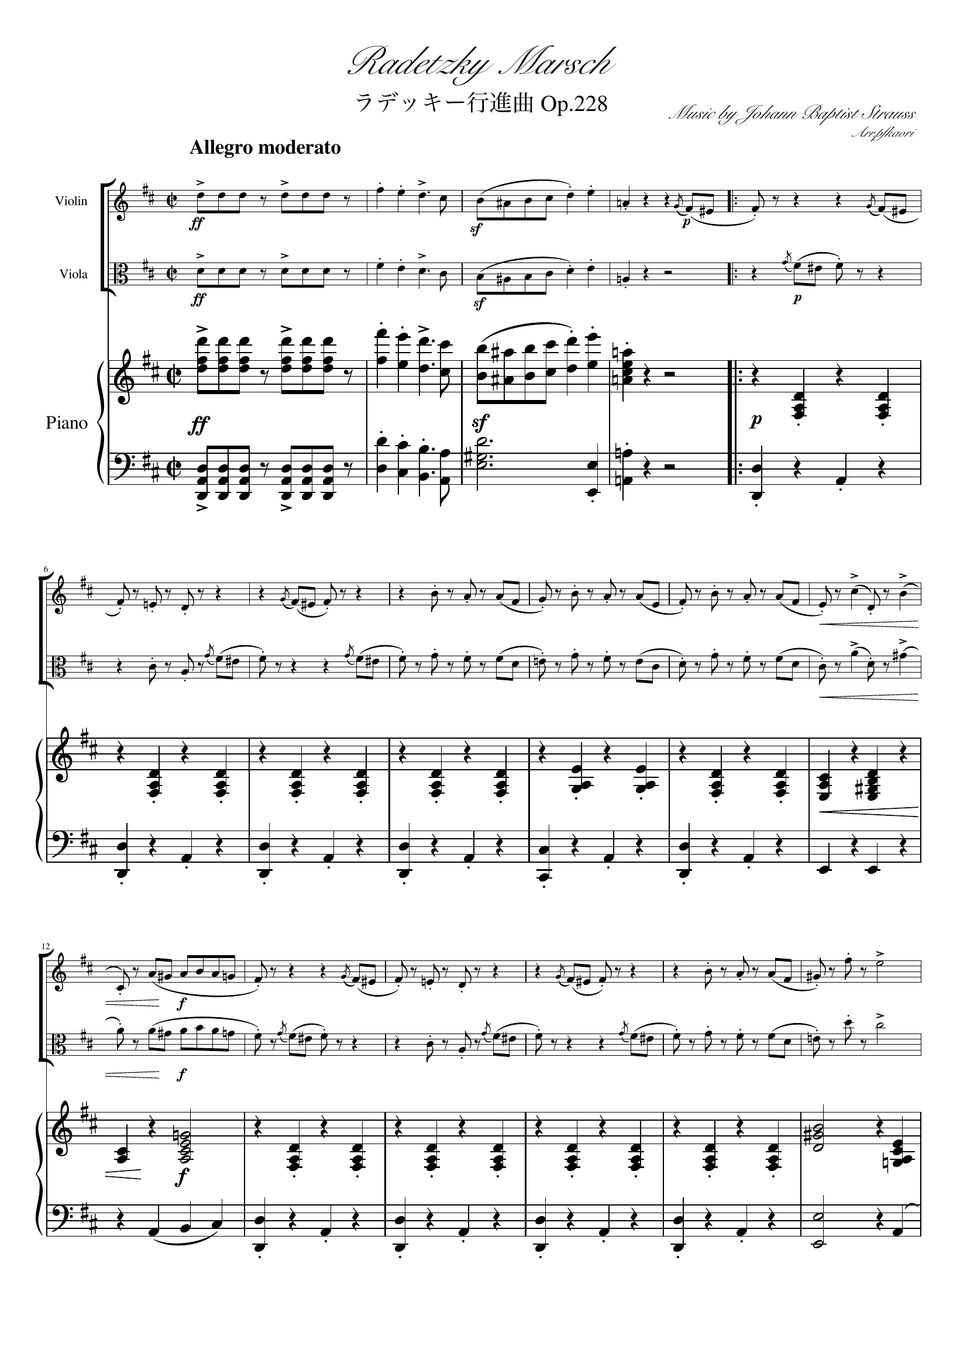 ヨハンシュトラウス1世 - ラデッキー行進曲 (D・ピアノトリオ/ヴァイオリン&ヴィオラ) by pfkaori